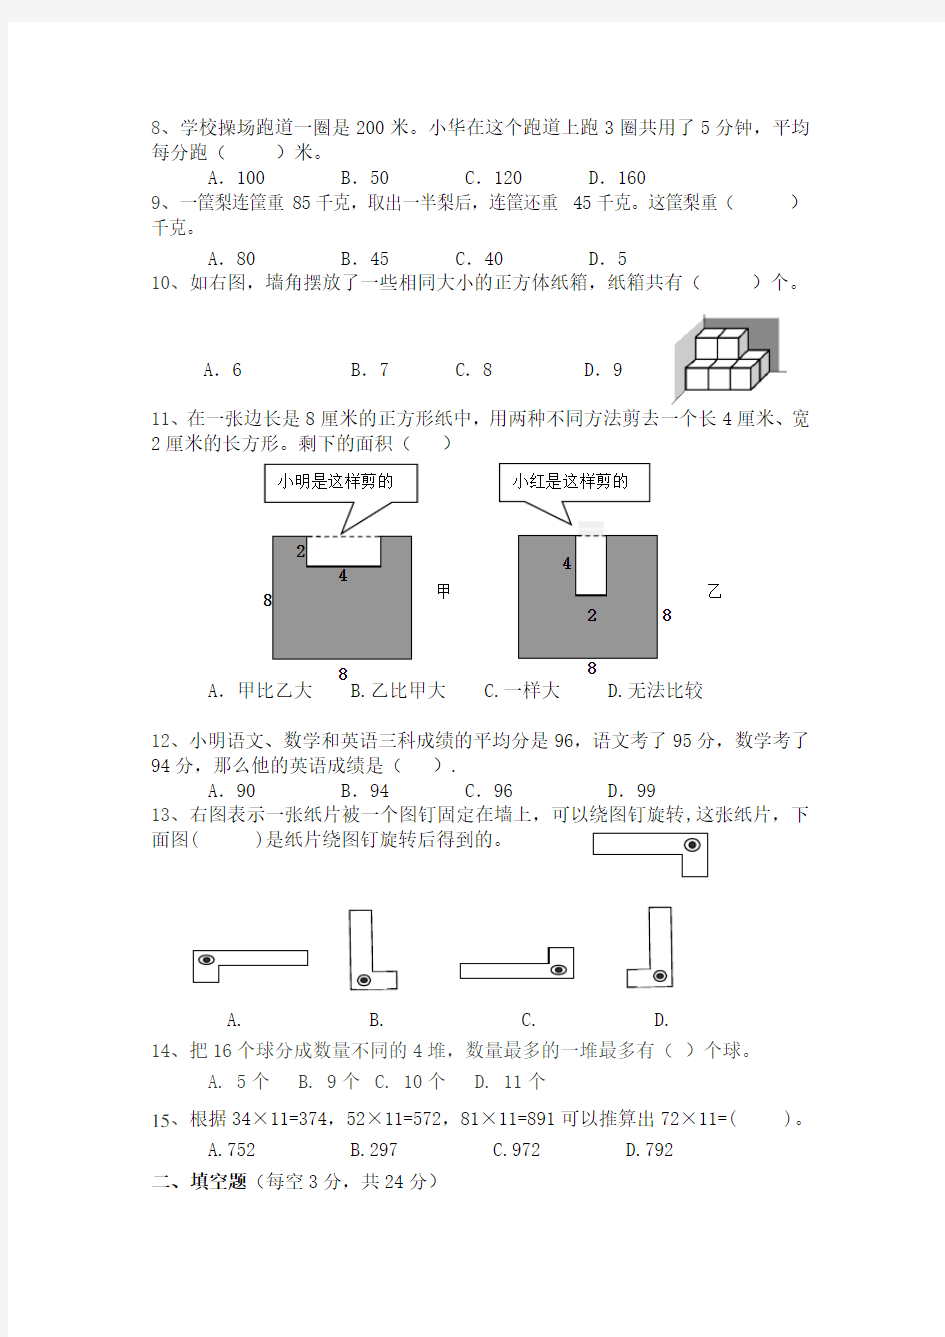 江苏省义务教育阶段四年级数学测试试卷